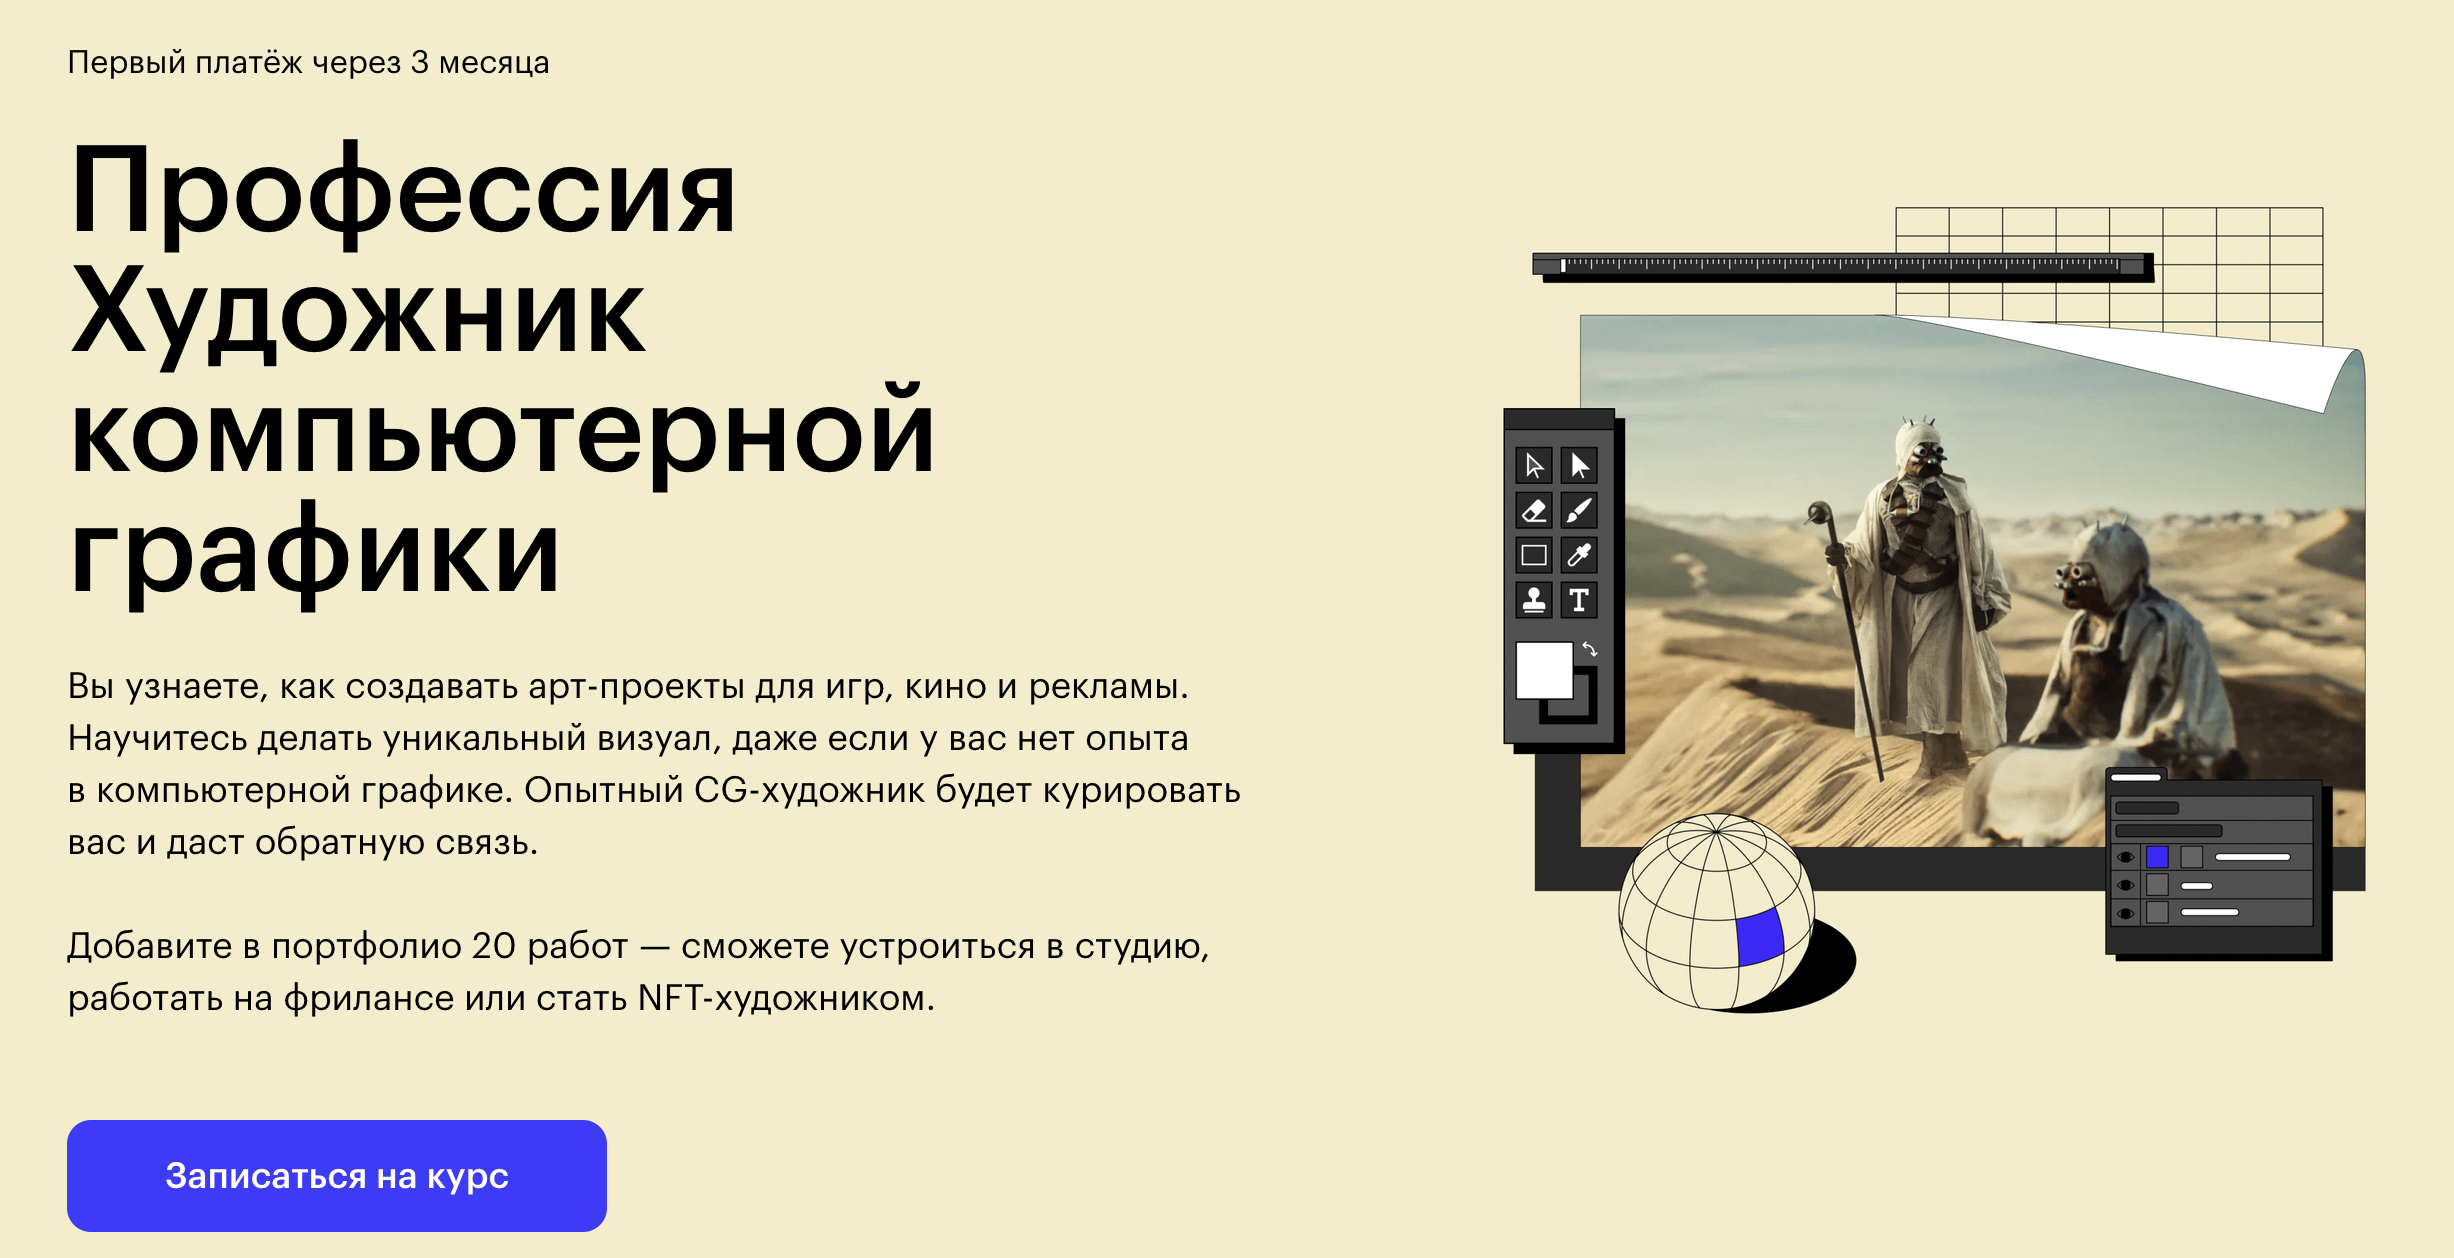 Skillbox: Профессия Художник компьютерной графики